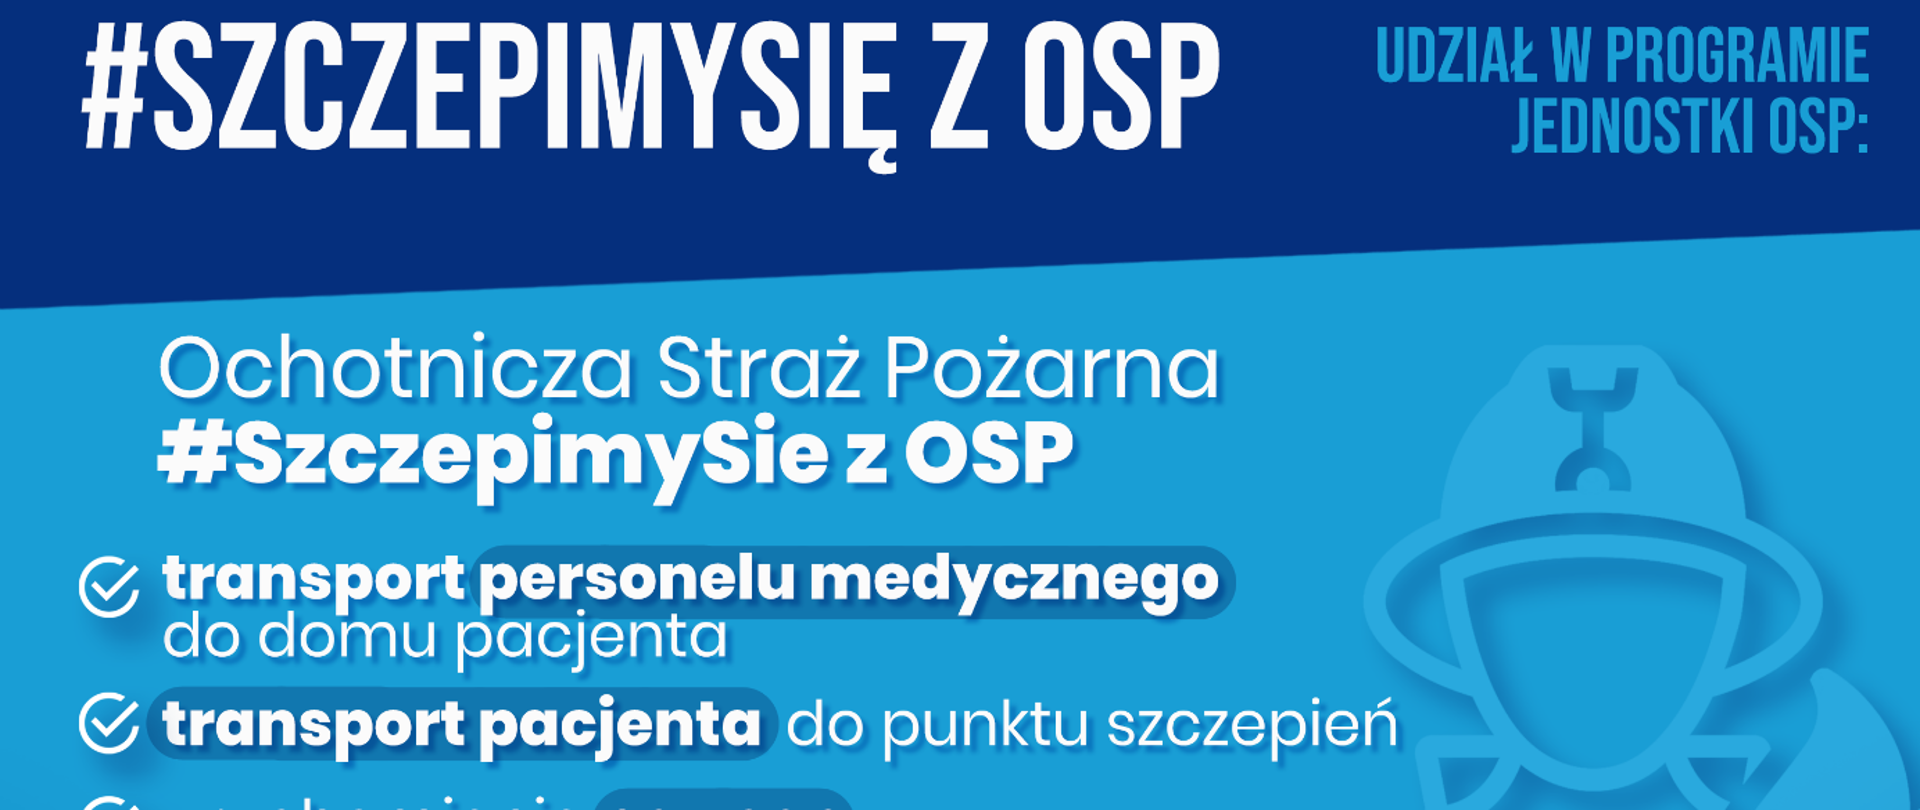 Plakat programu SzczepimySię z OSP. Białe napisy na niebieskim tle. 